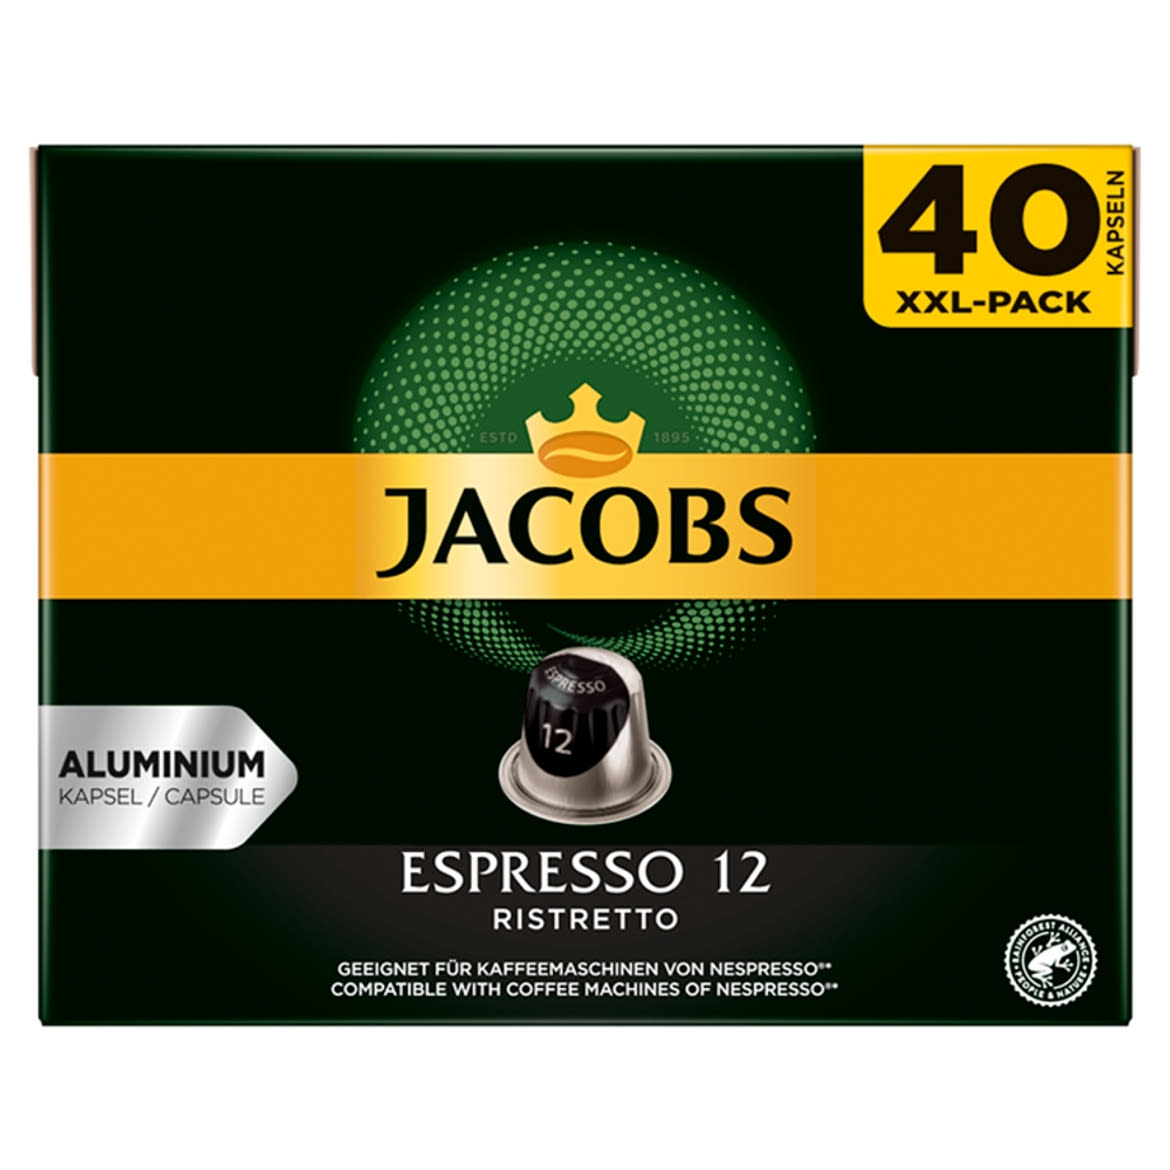 Jacobs Espresso 12 Ristretto őrölt-pörkölt kávé kapszulában